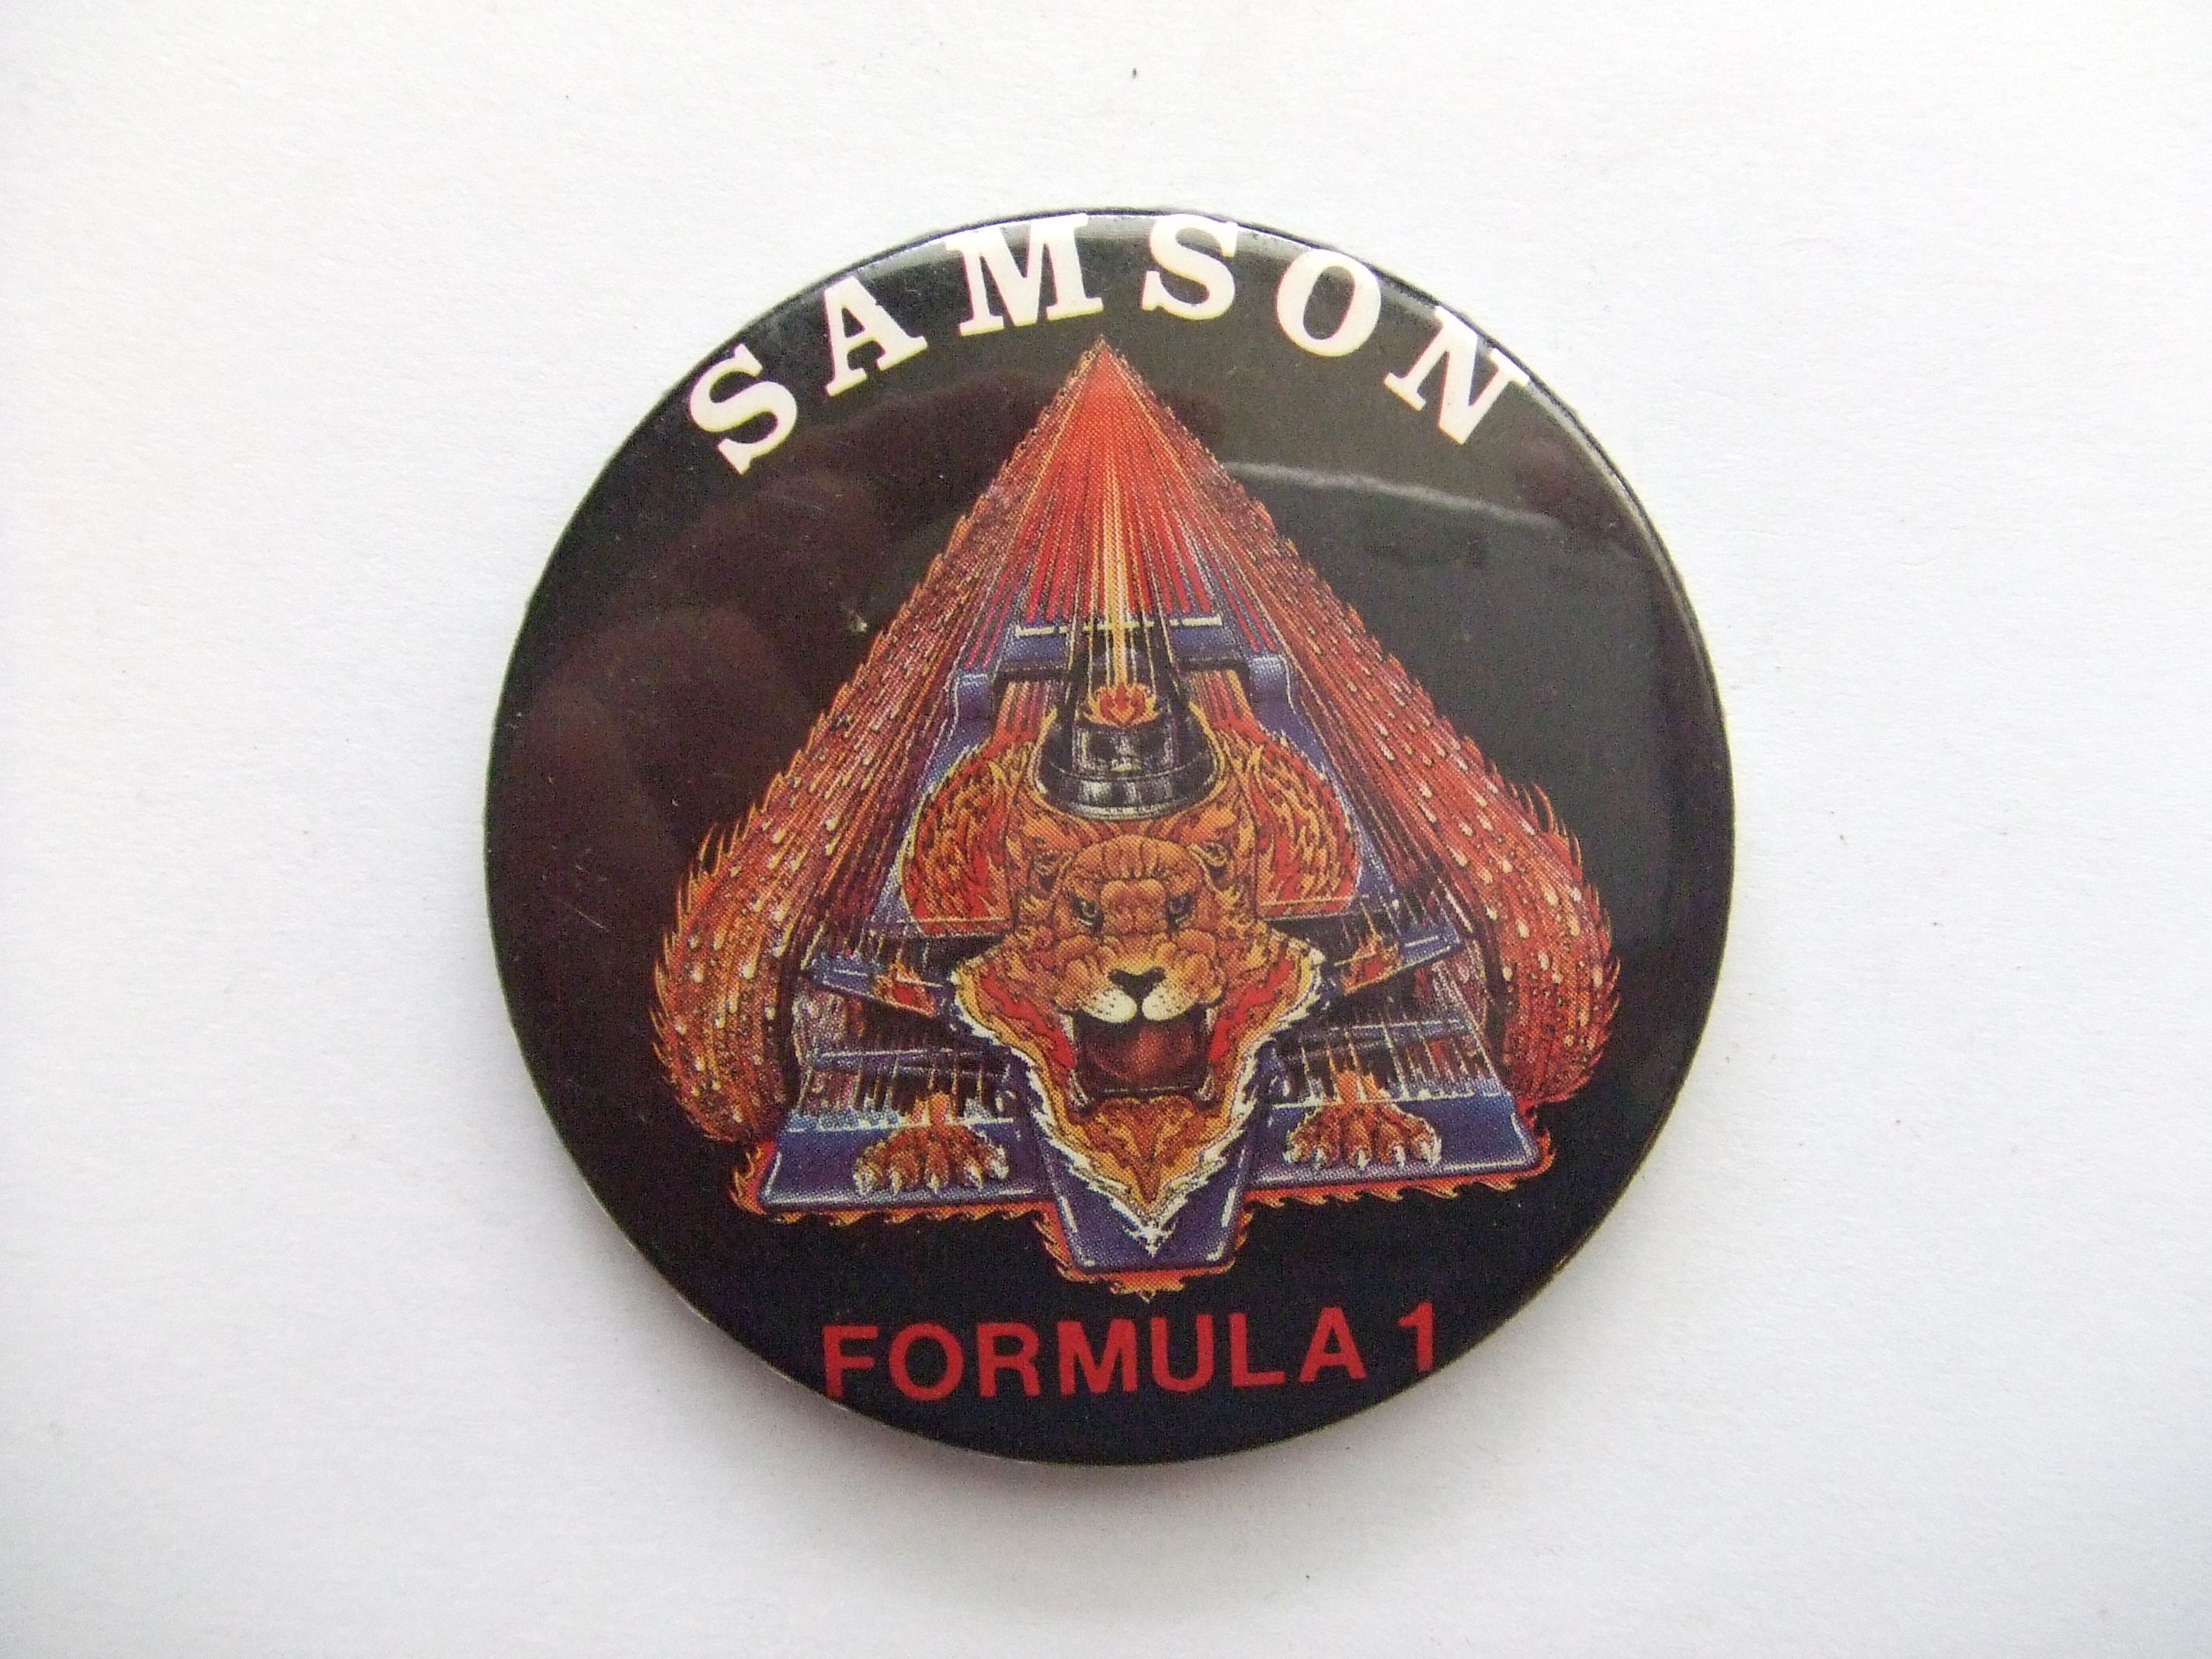 Samson Formula 1 autorace